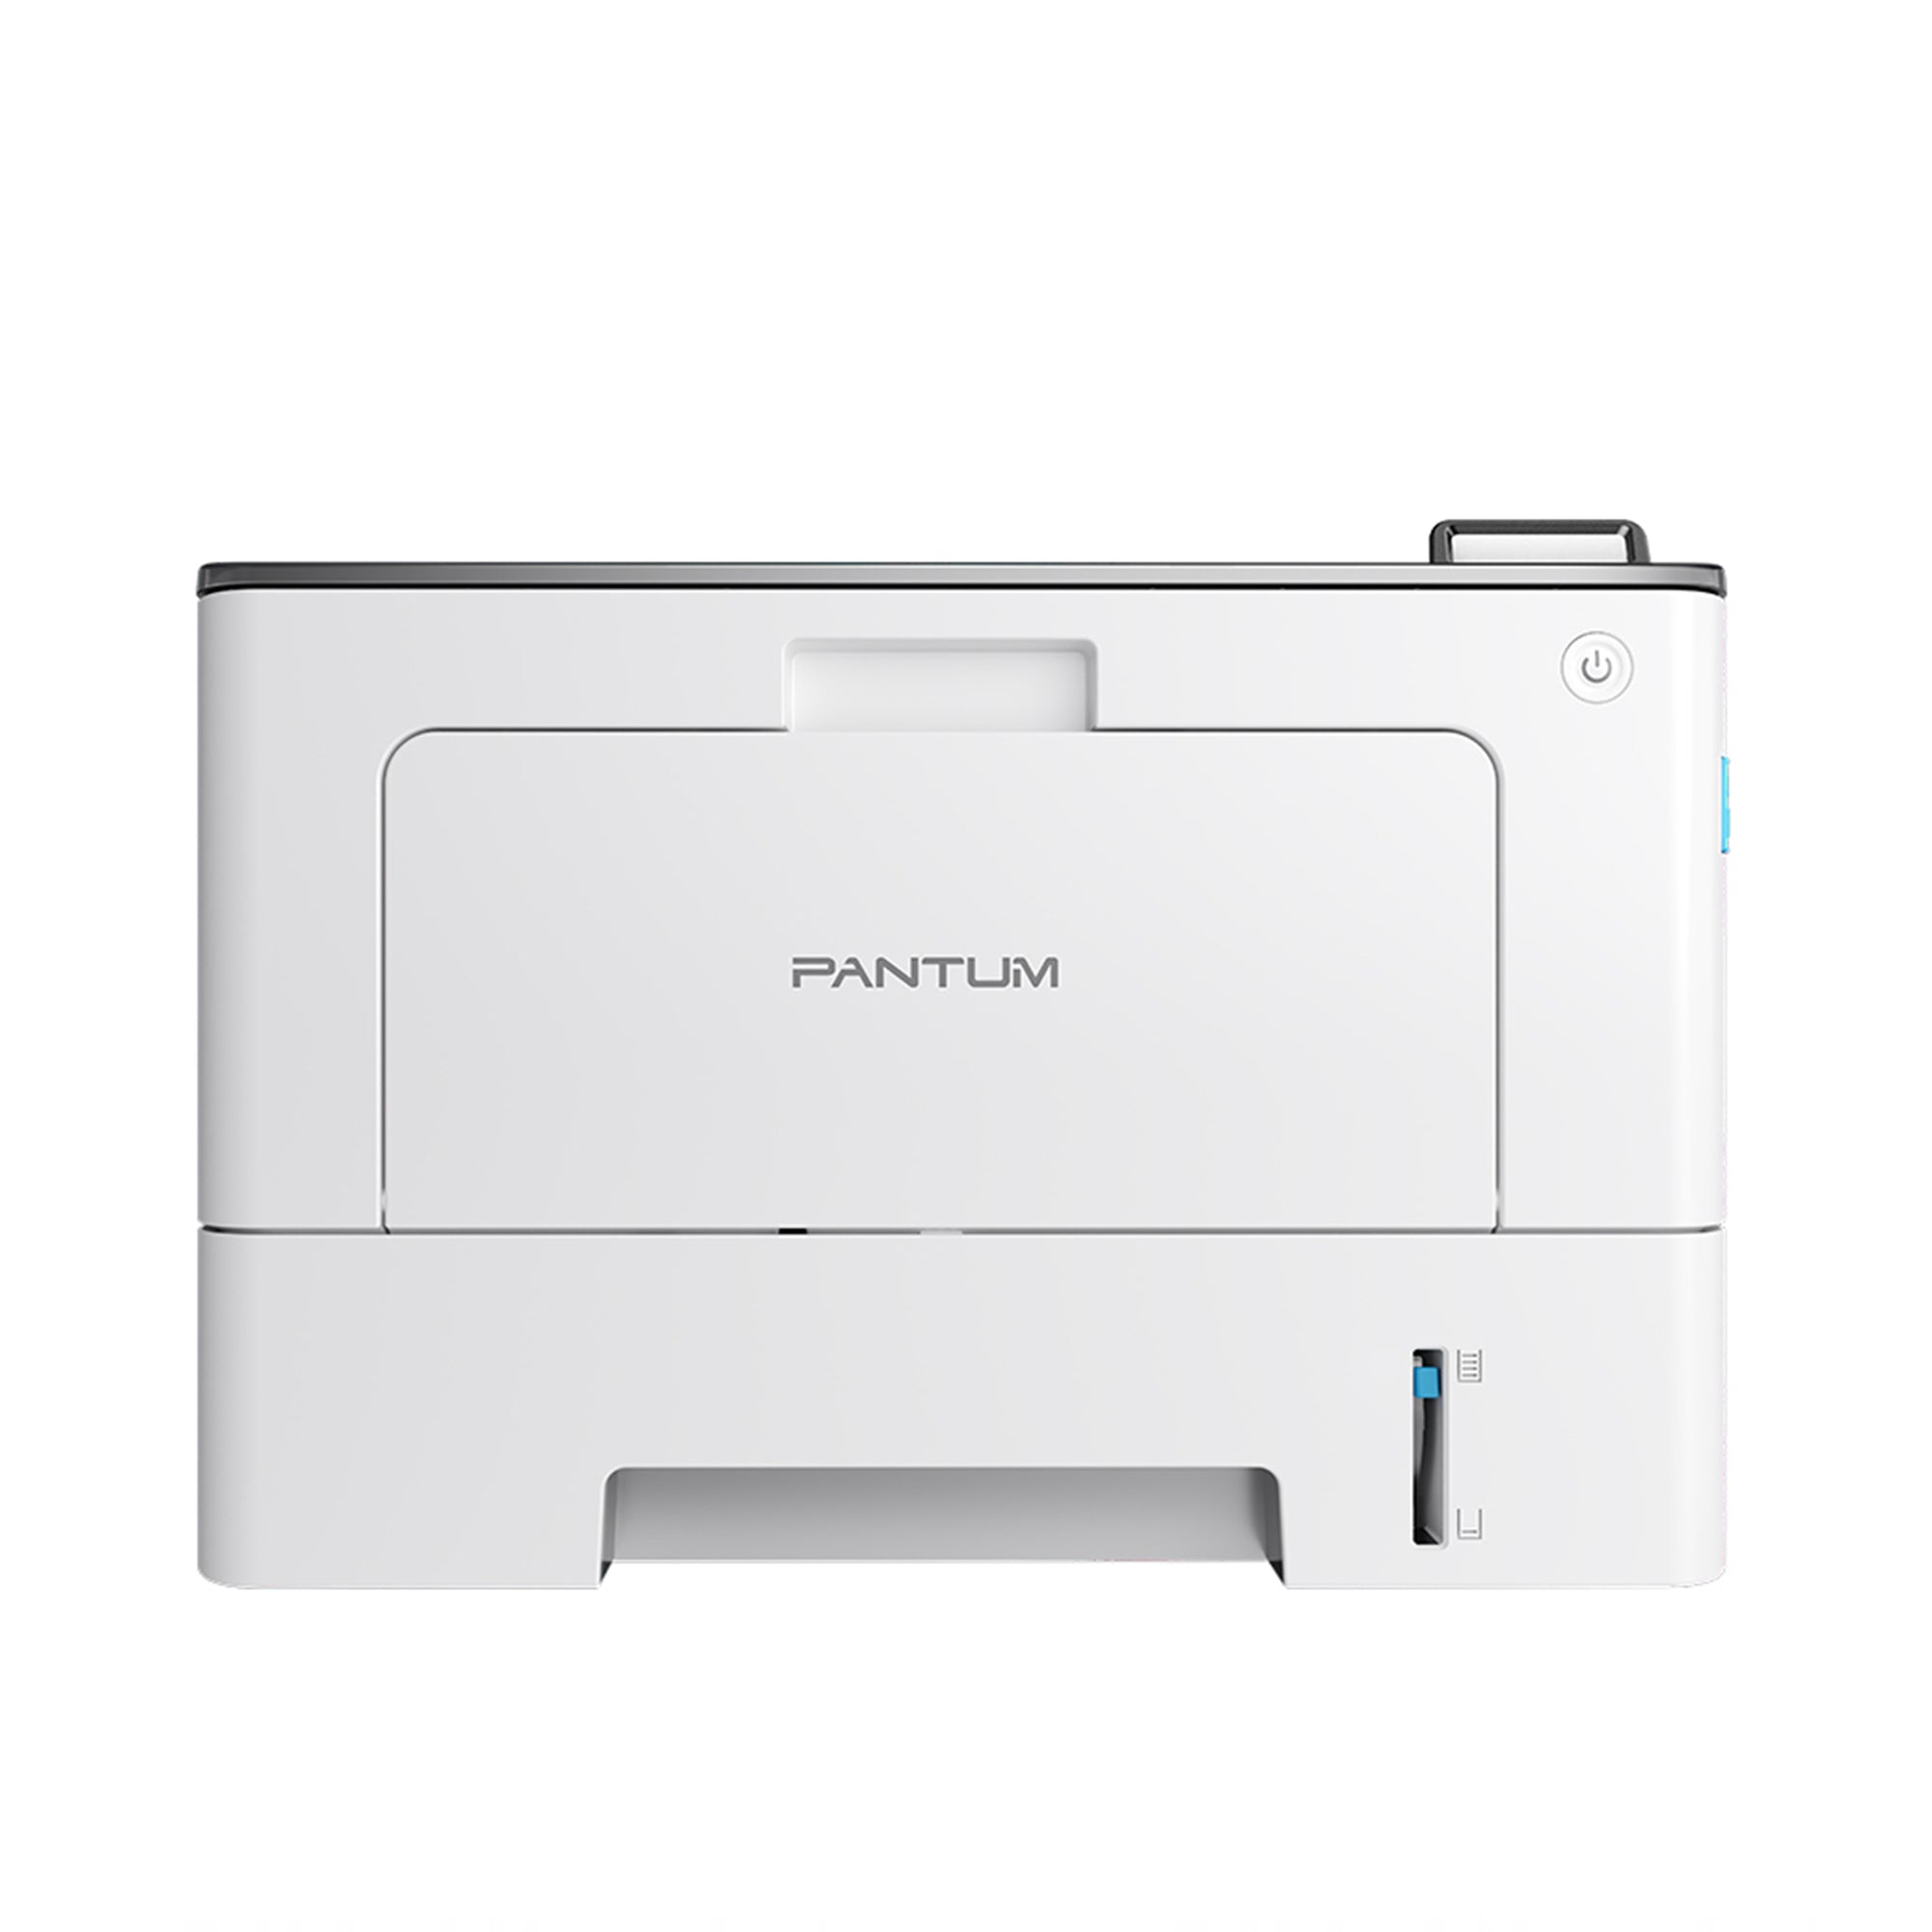 Pantum BP5100DN printer